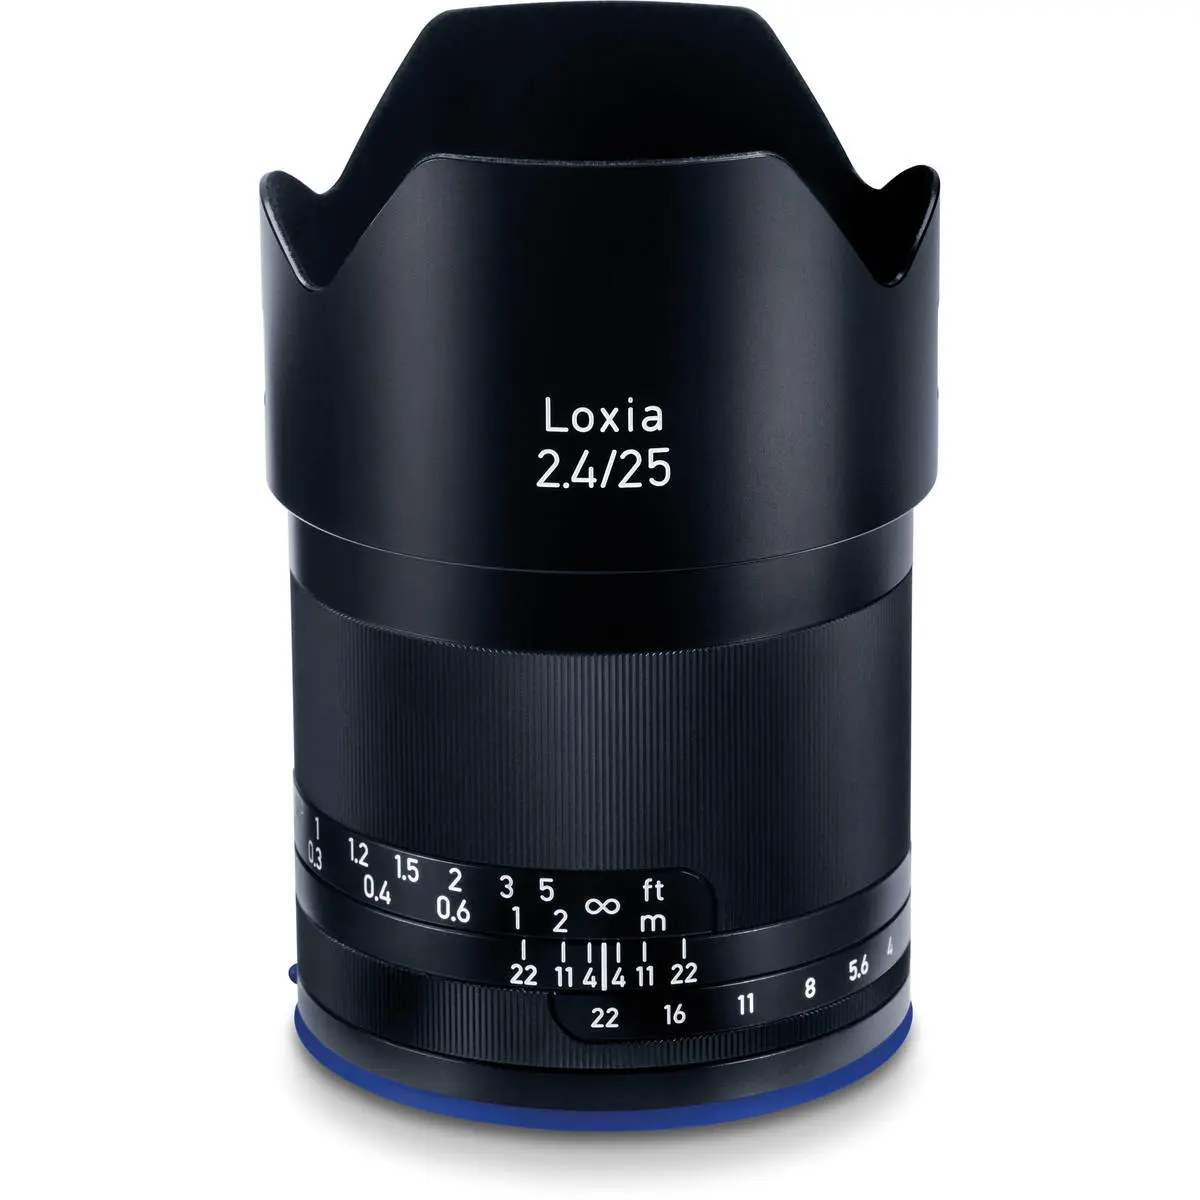 1. Carl Zeiss Loxia 2.4/25 (Sony FE) Lens